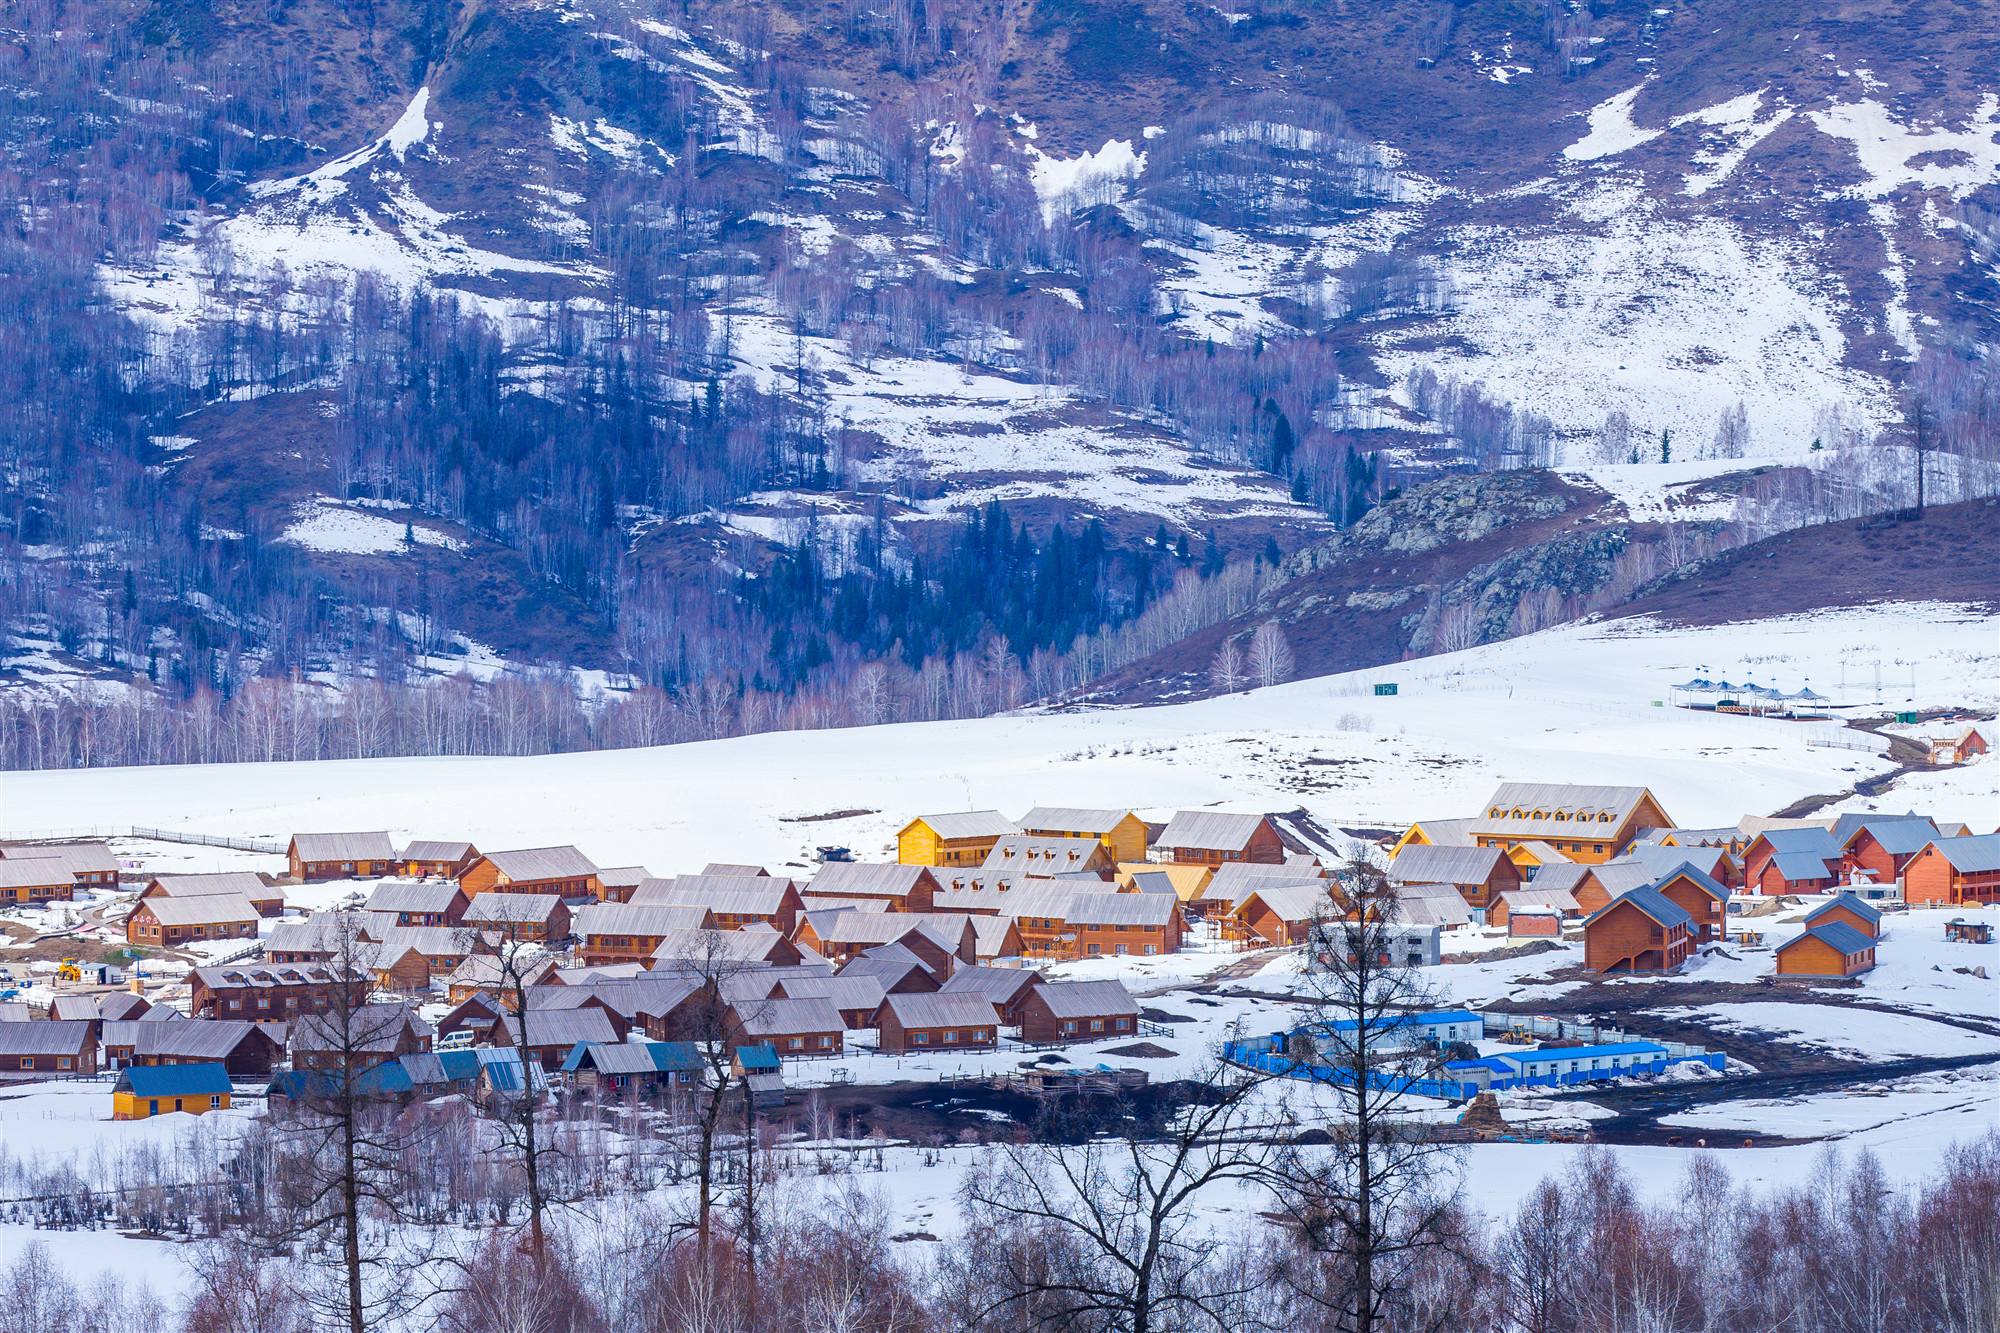 文化和旅游部发布全国10条冰雪旅游精品线路